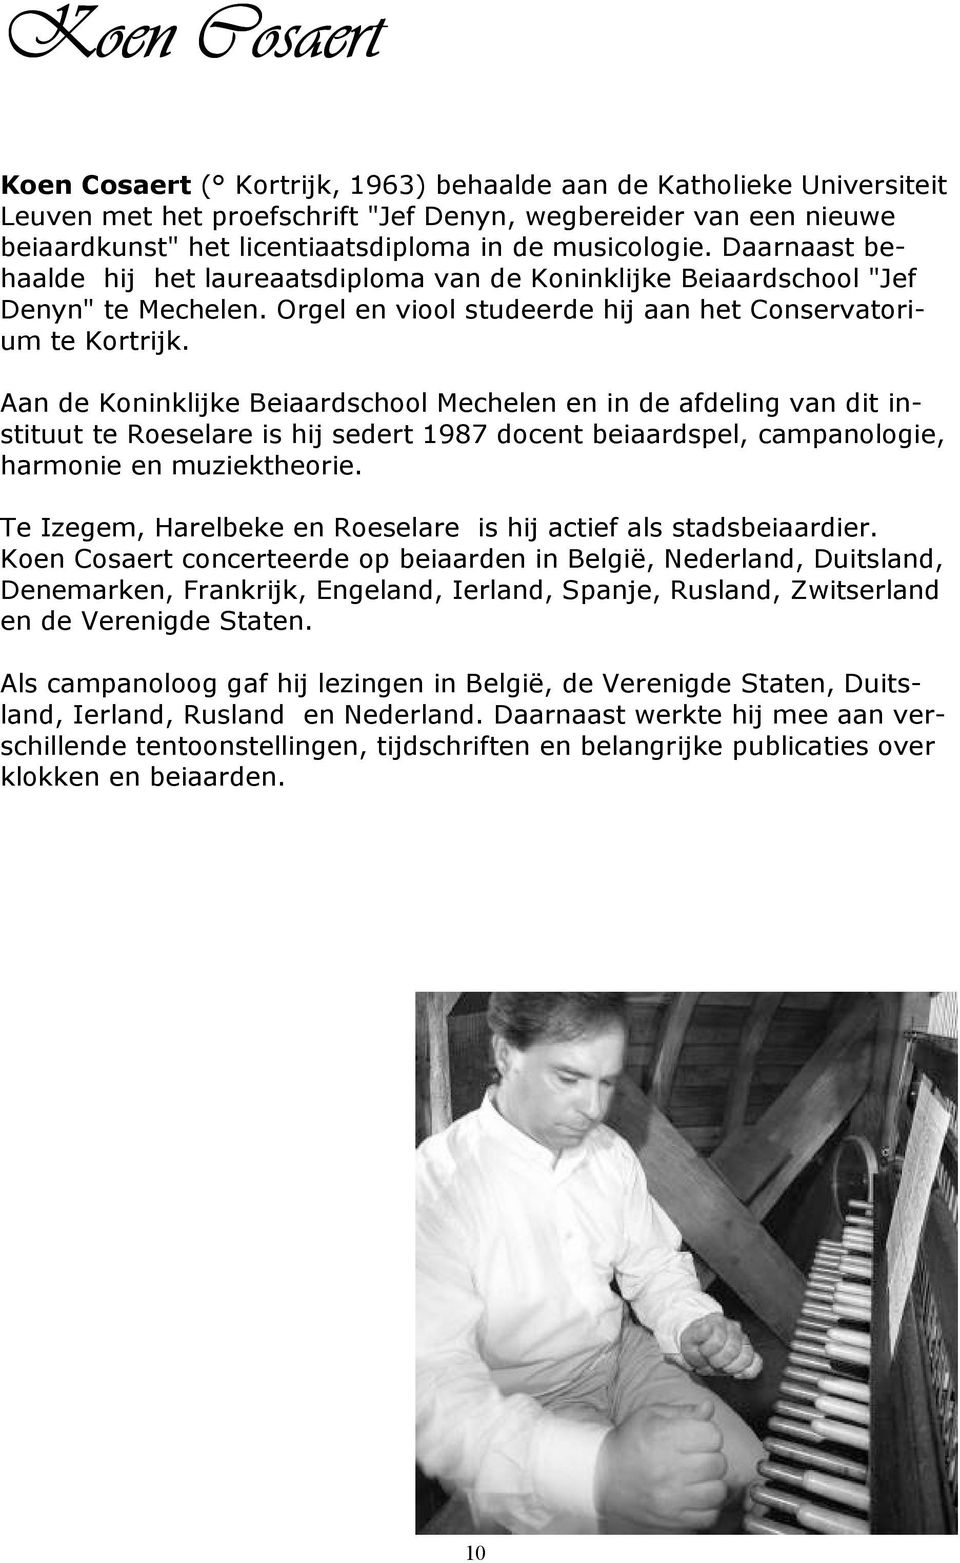 Aan de Koninklijke Beiaardschool Mechelen en in de afdeling van dit instituut te Roeselare is hij sedert 1987 docent beiaardspel, campanologie, harmonie en muziektheorie.